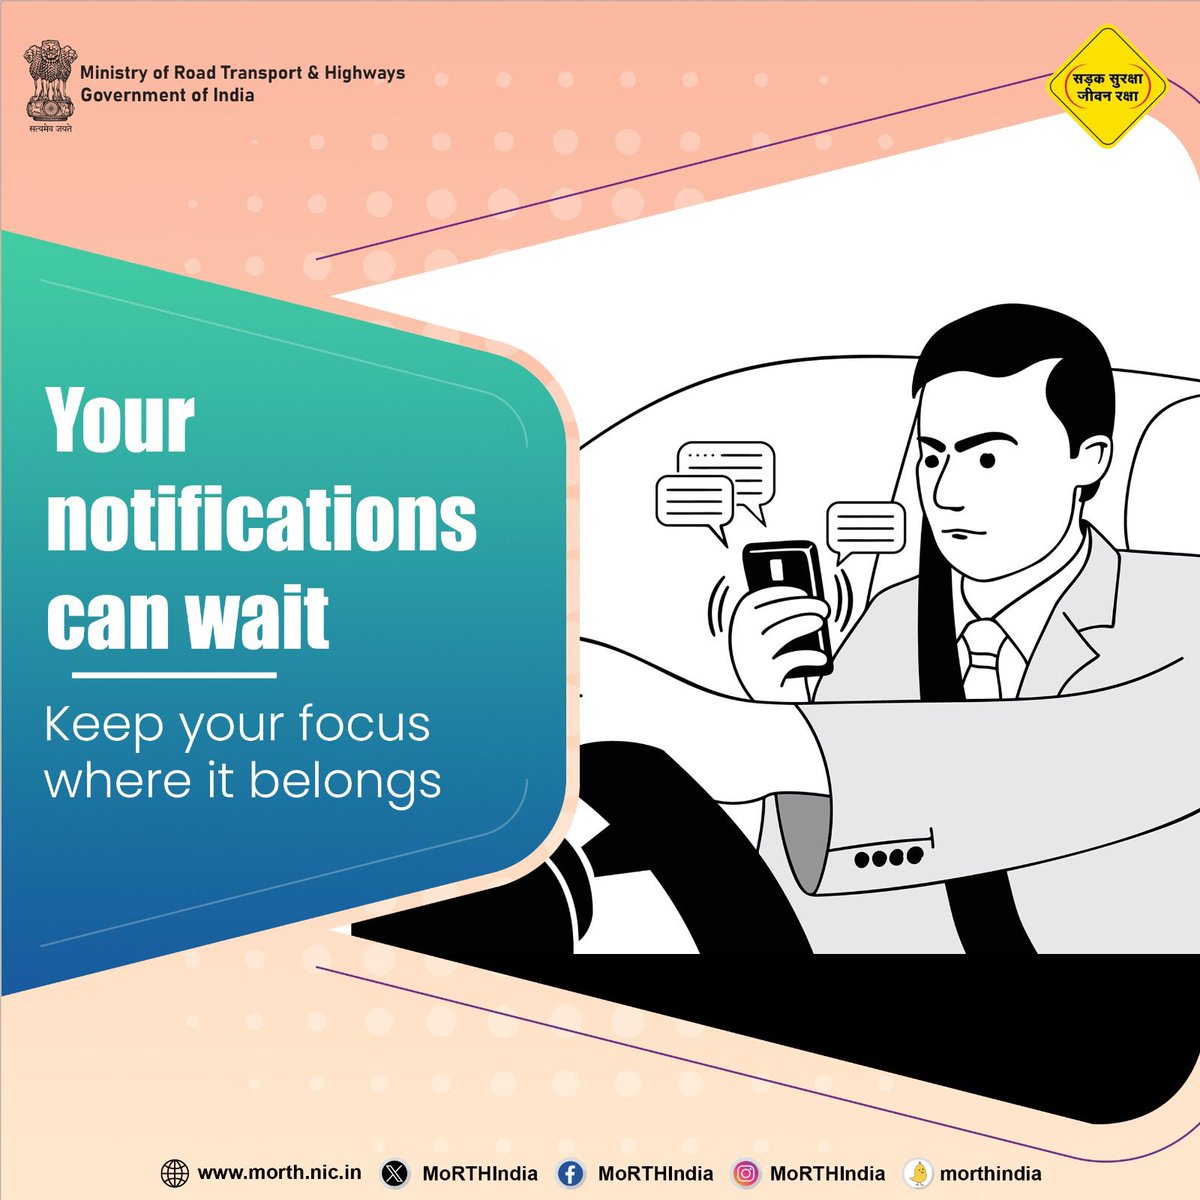 Your notifications can wait! #SadakSurakshaJeevanRaksha #DriveResponsibly